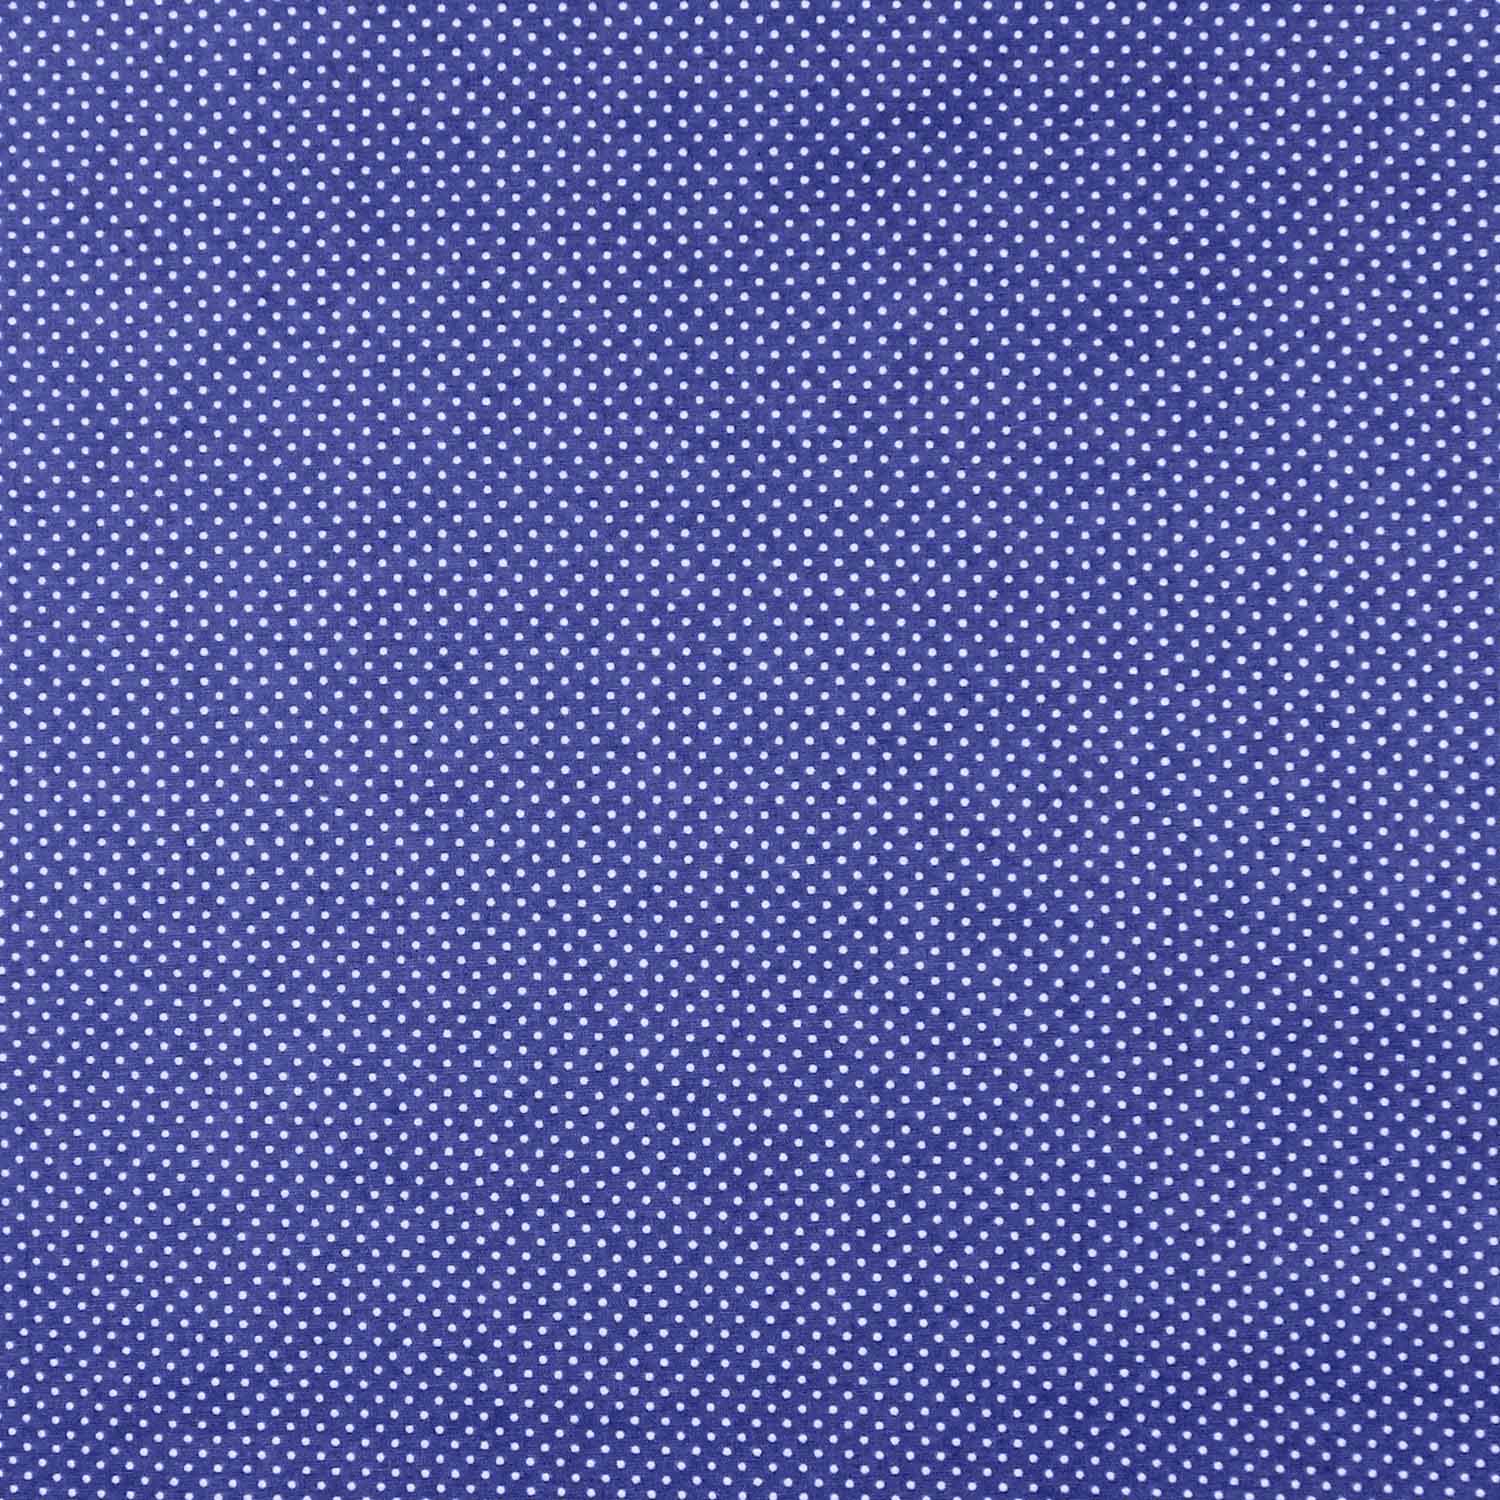 tecido-tricoline-poa-mini-branco-fundo-azul-bic-della-aviamentos-10877